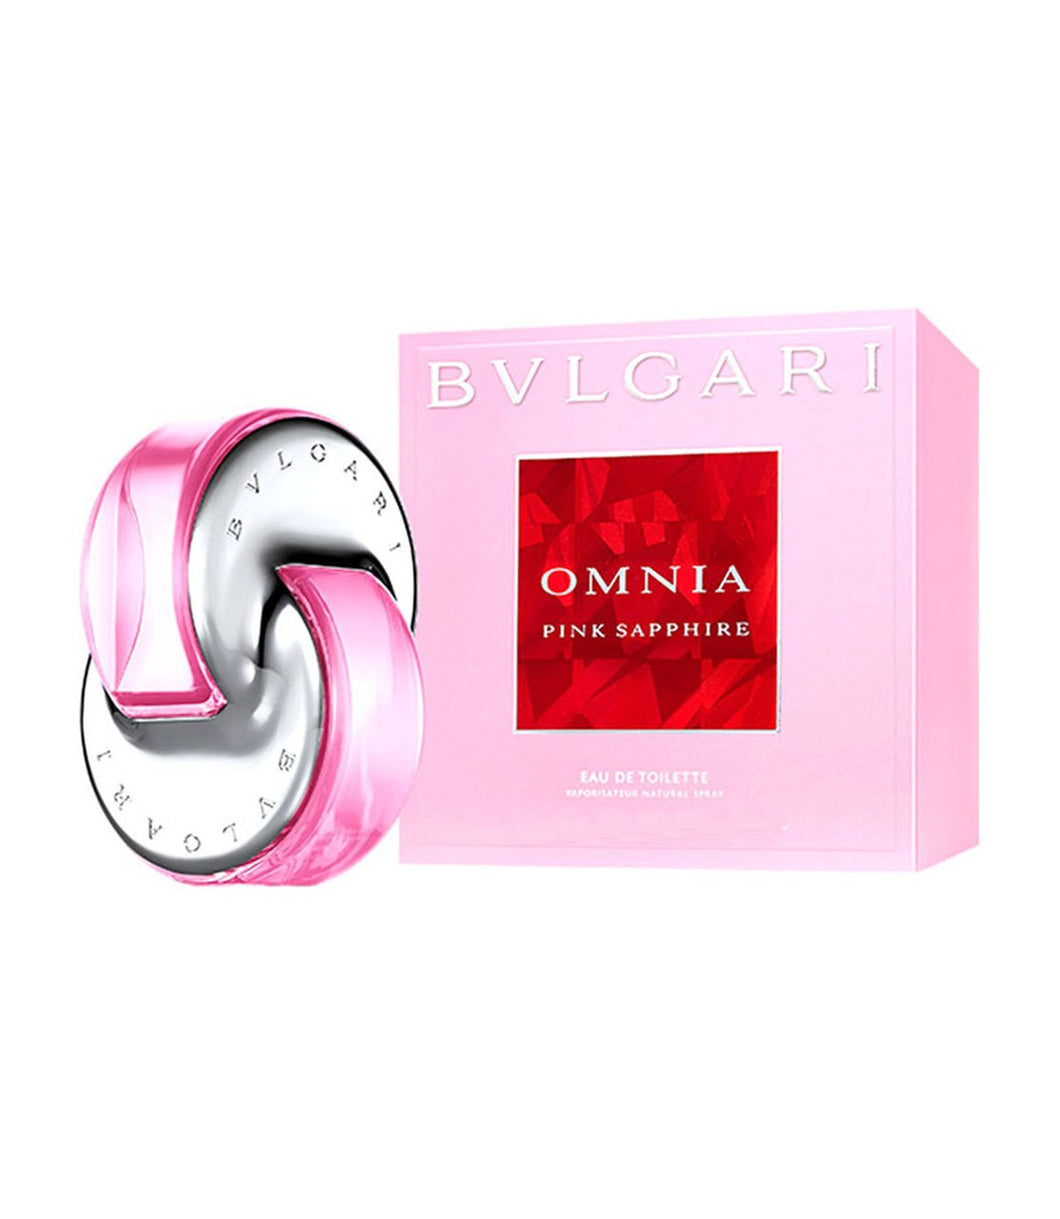 Bvlgari Omnia Pink Sapphire EDT by Bvlgari for Women